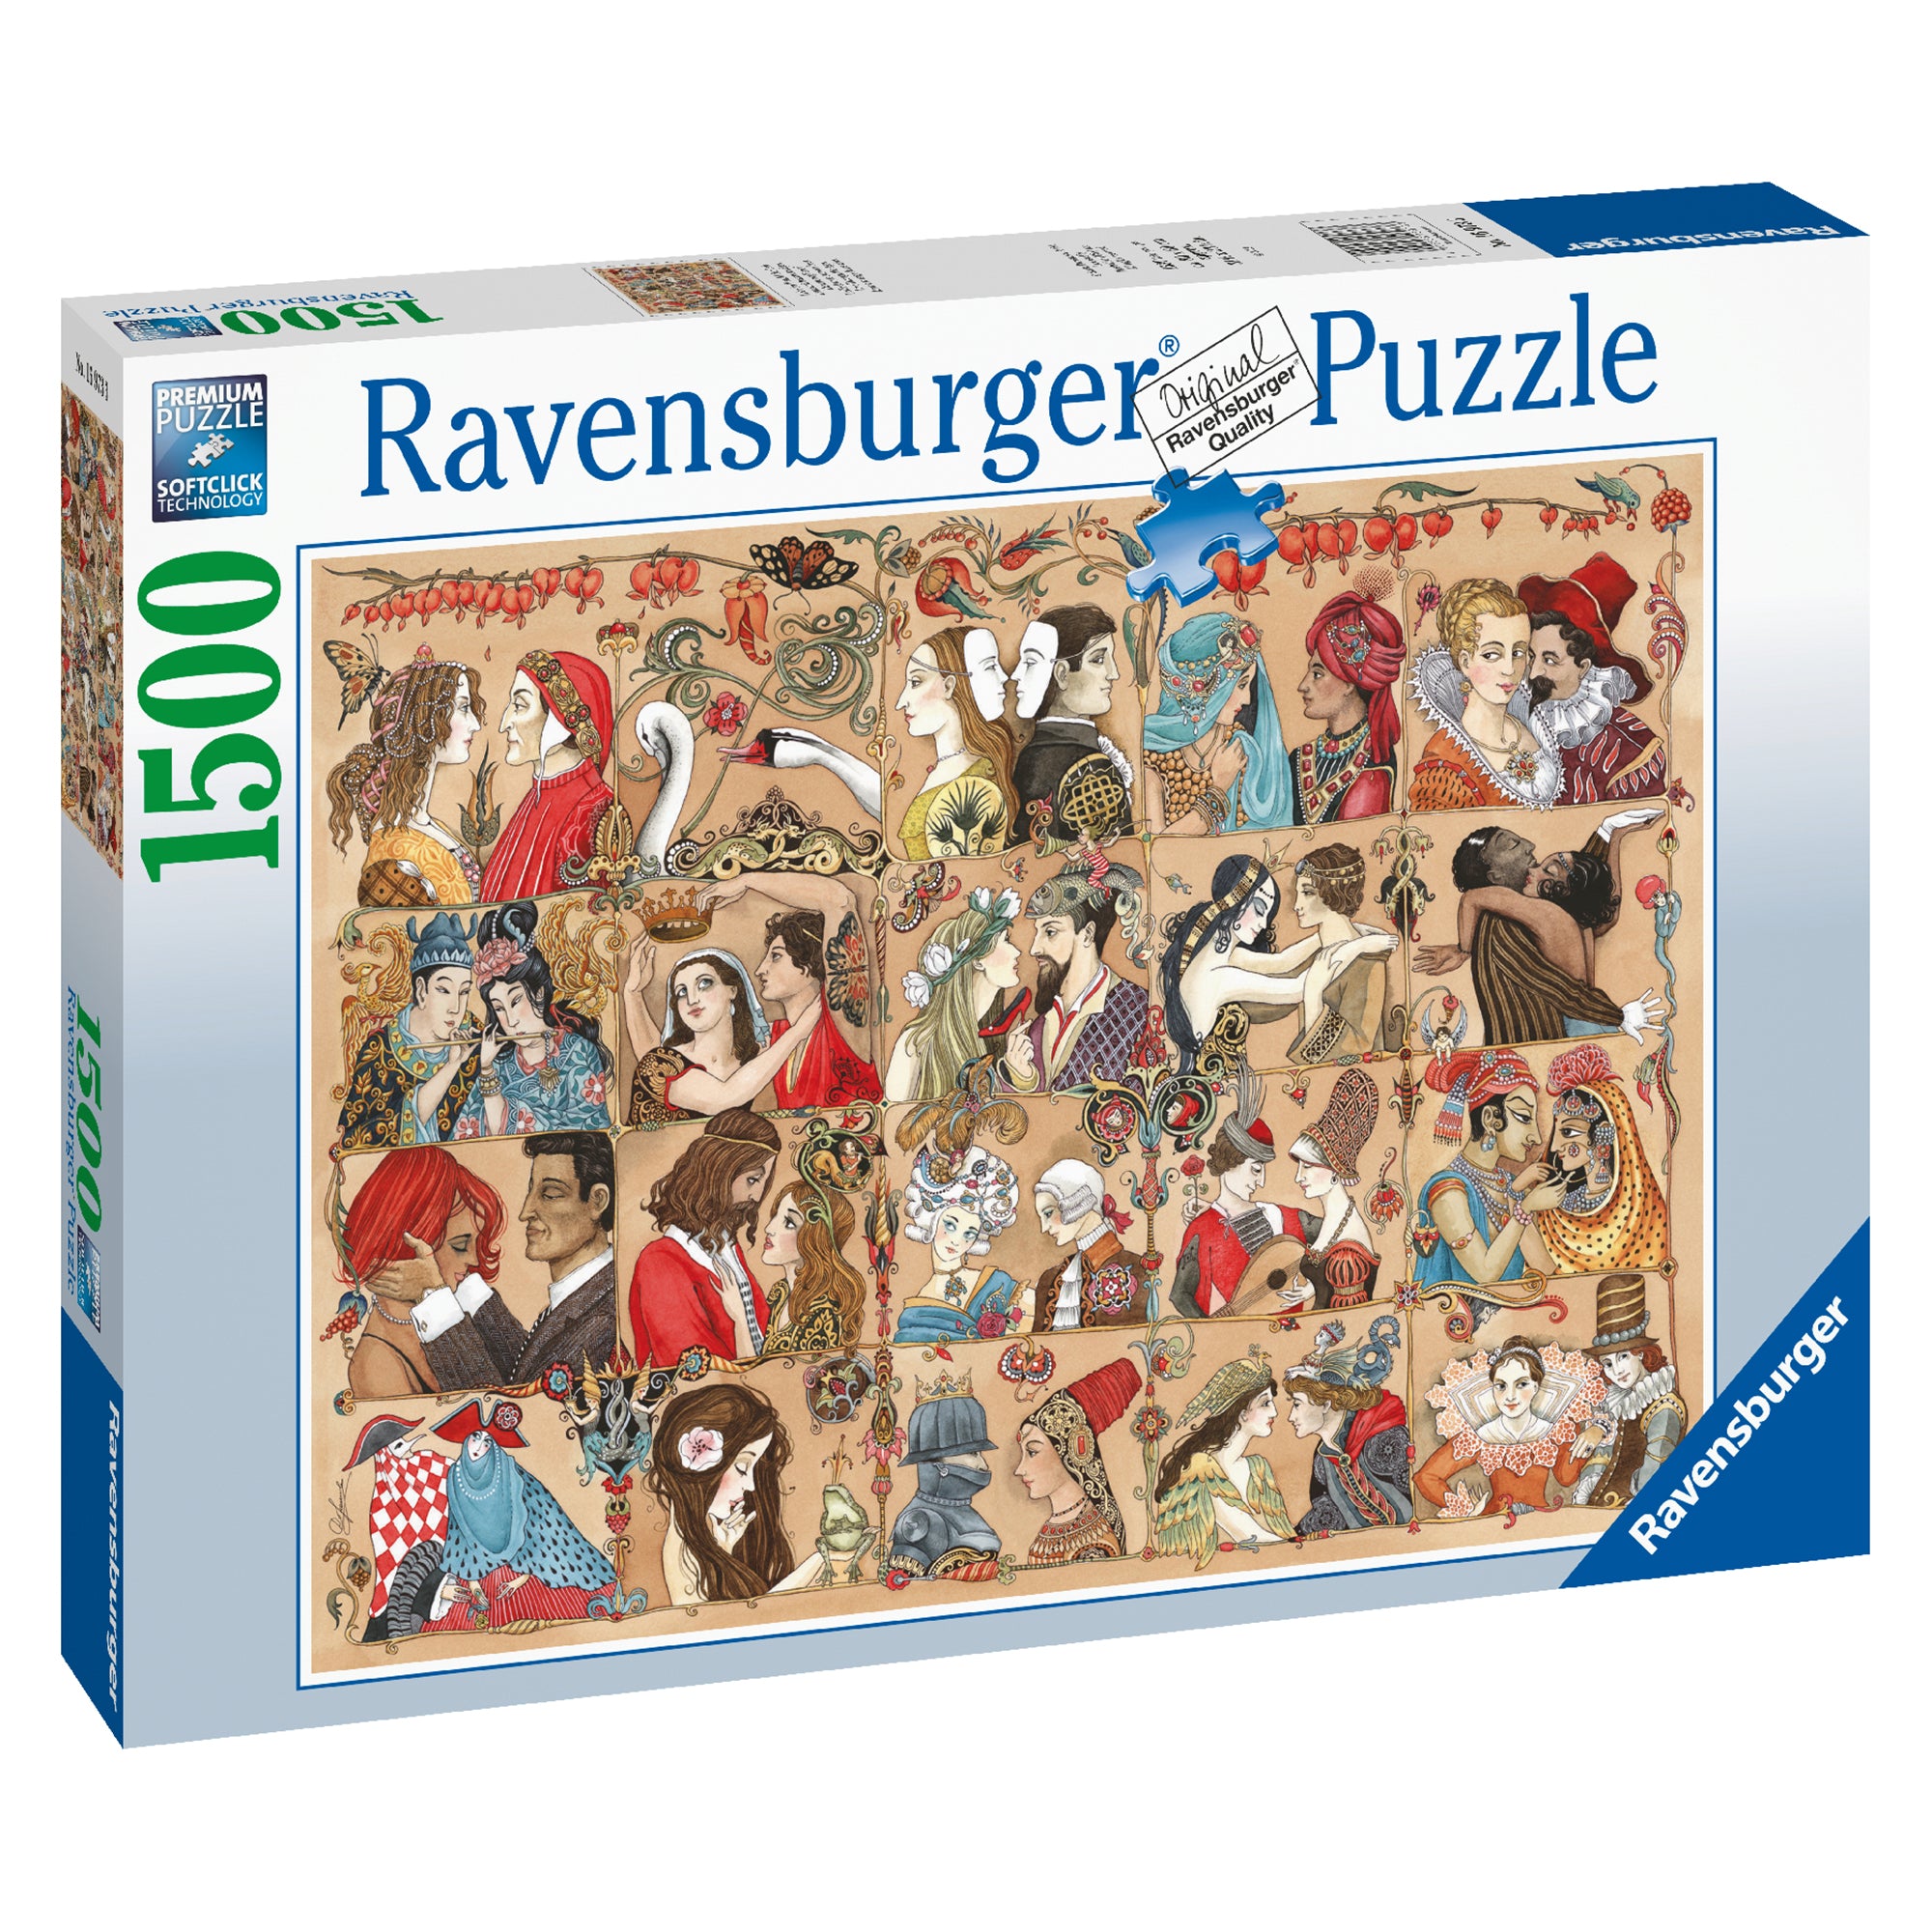 Ravensburger puzzle 3D Boîte de rangement New York City